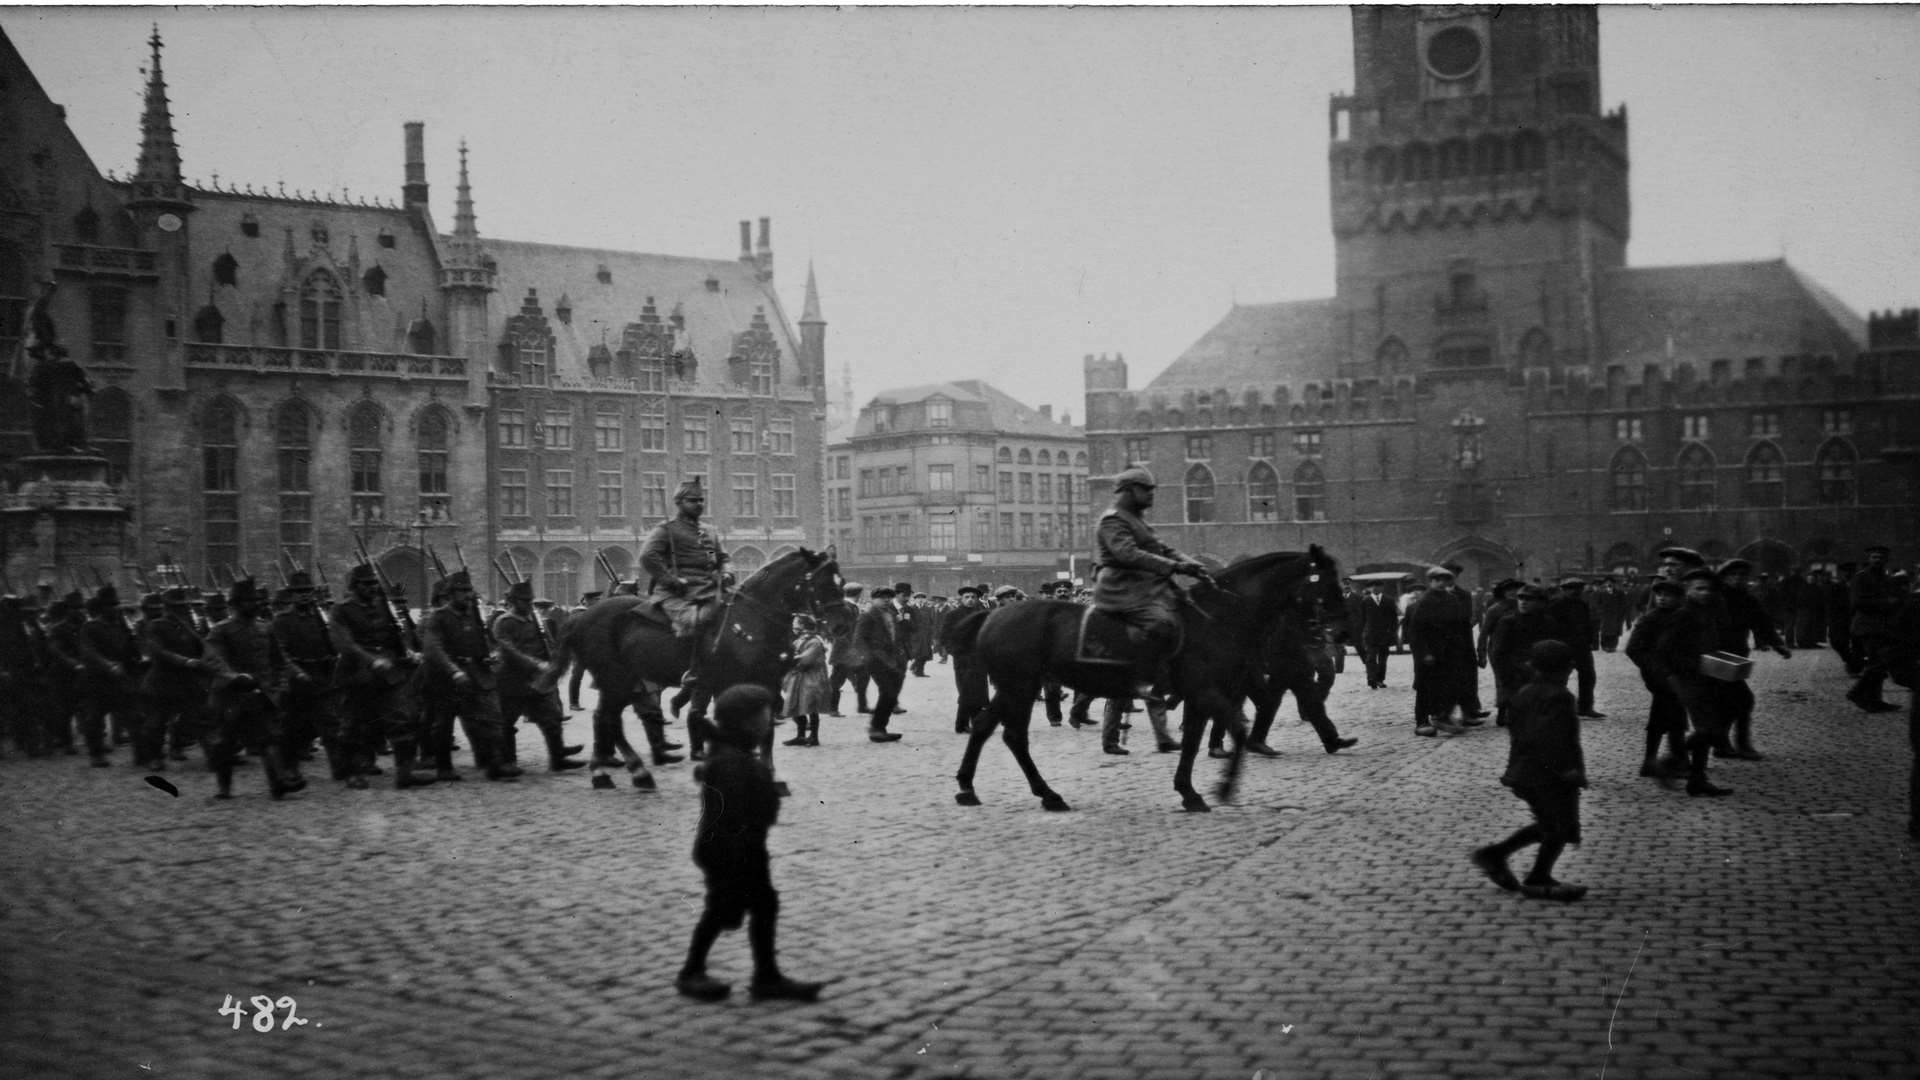 Bruges at War 1914-18